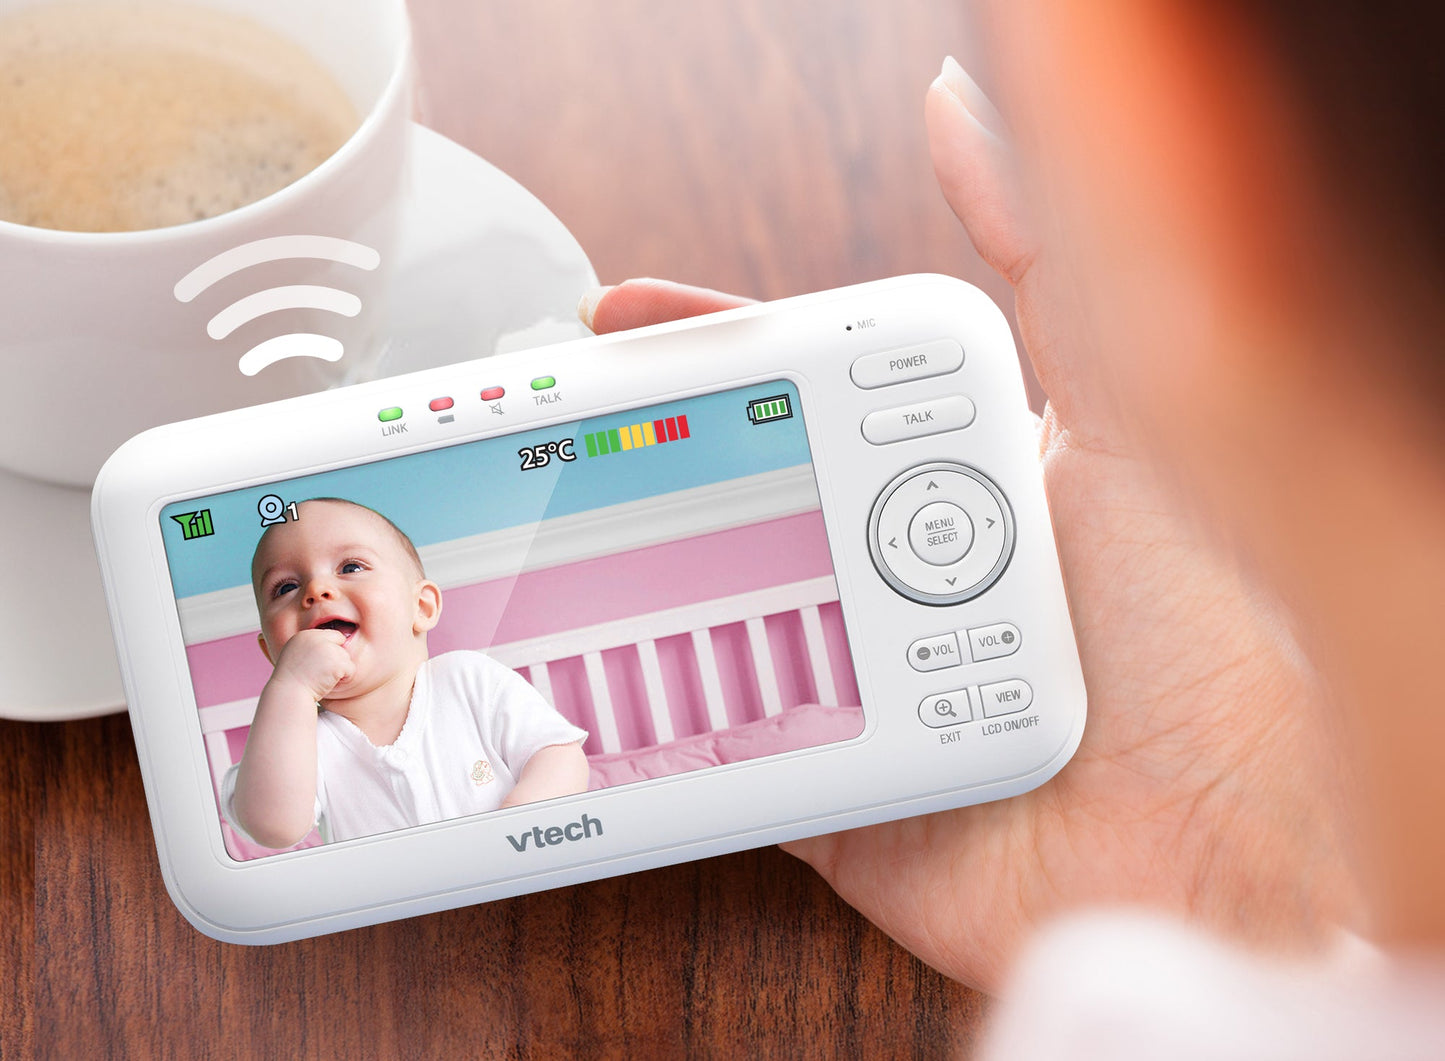 Vtech VM5255 kamerás babaőrző - BBLOVE | Bababolt és webshop